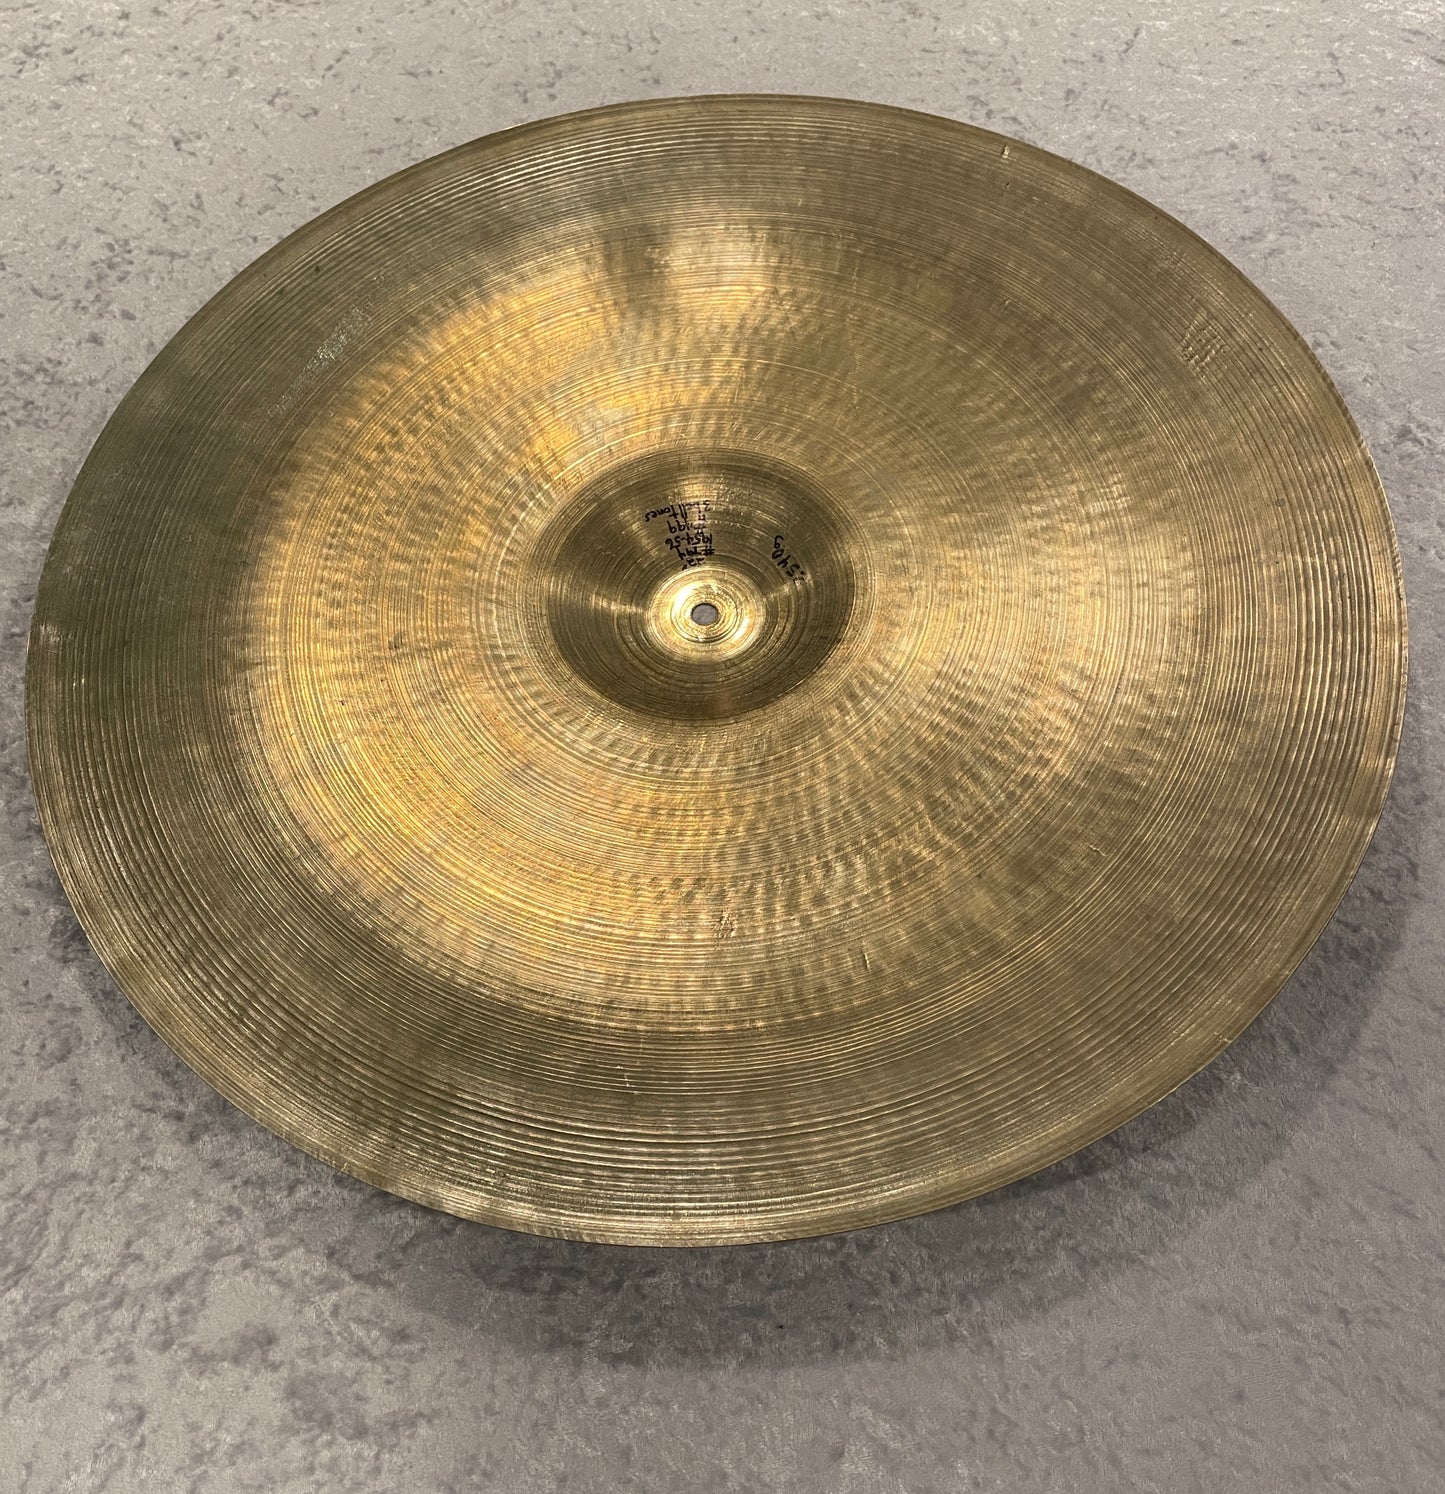 22" Zildjian A 1954-56 Large Stamp Ride Cymbal 2540g #794